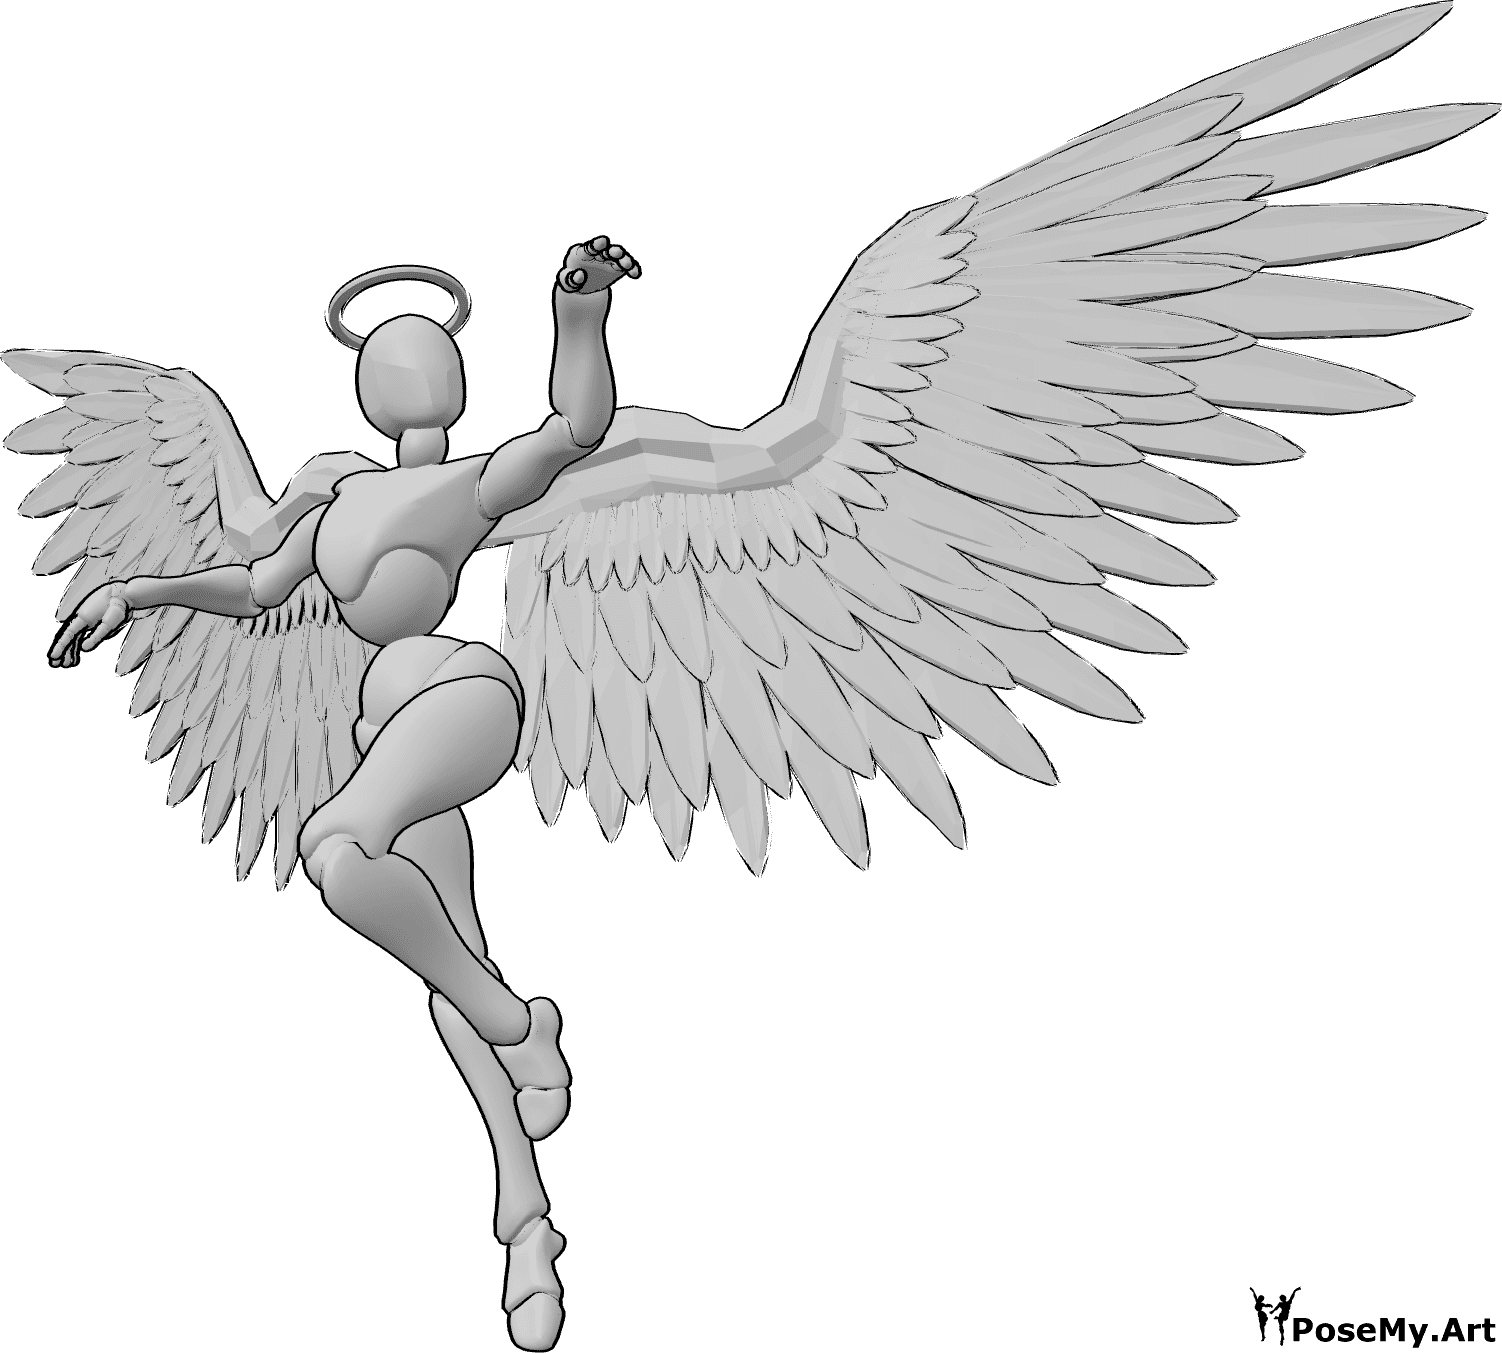 Posen-Referenz- Weiblicher Engel tanzende Pose - Weiblicher Engel fliegt und tanzt in der Luft, hebt die Hände und schaut nach links